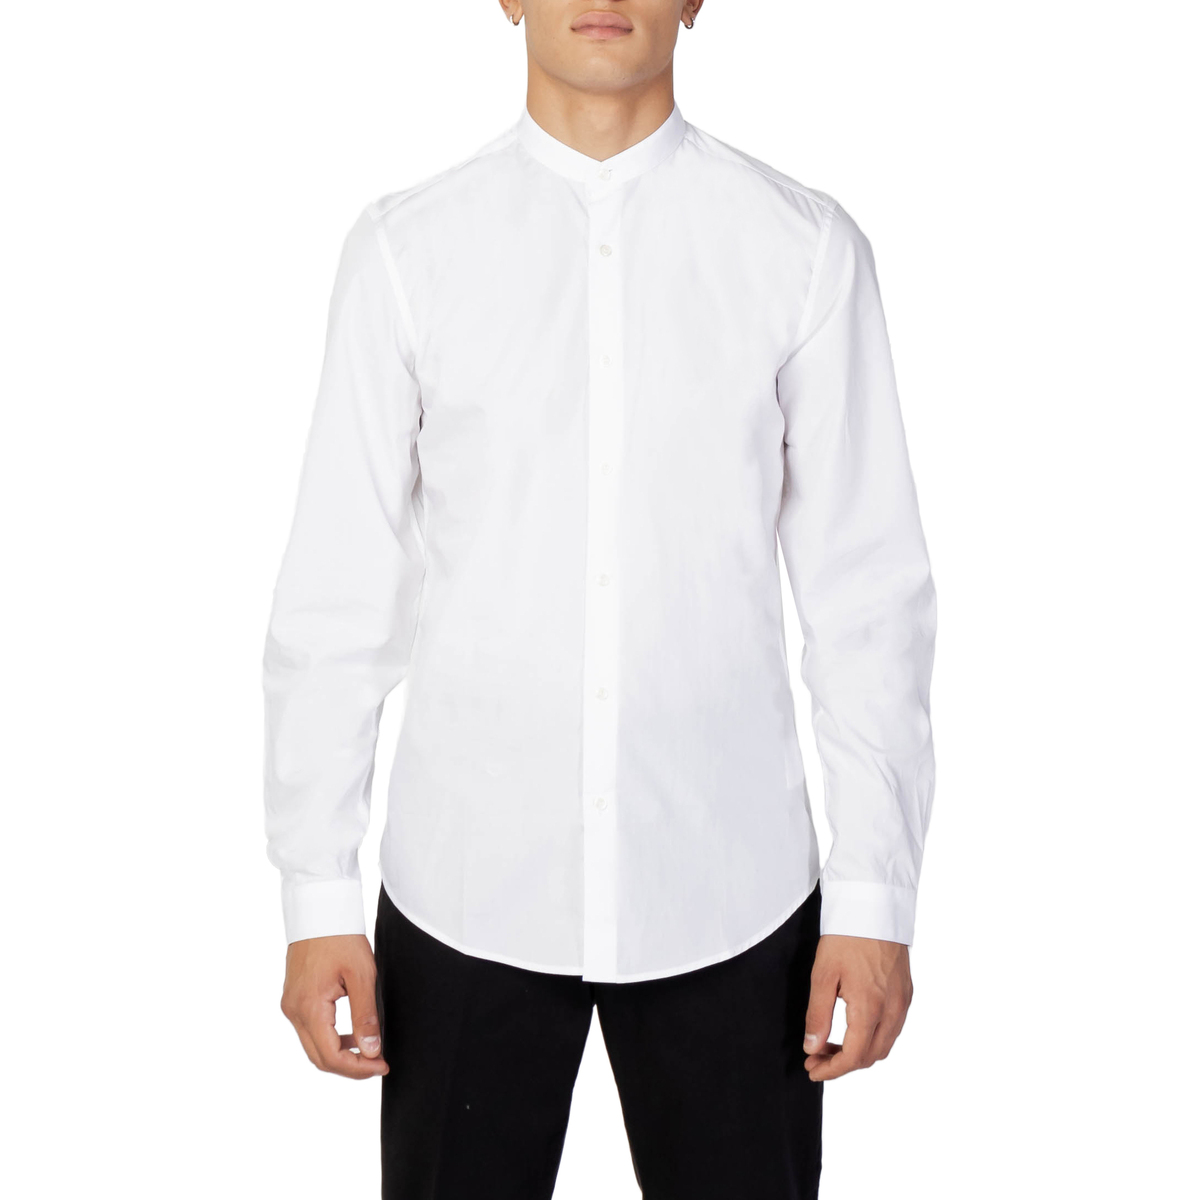 Vêtements Homme Chemises manches longues Antony Morato SÉOUL SLIM FIT MMSL00692-FA400078 Blanc